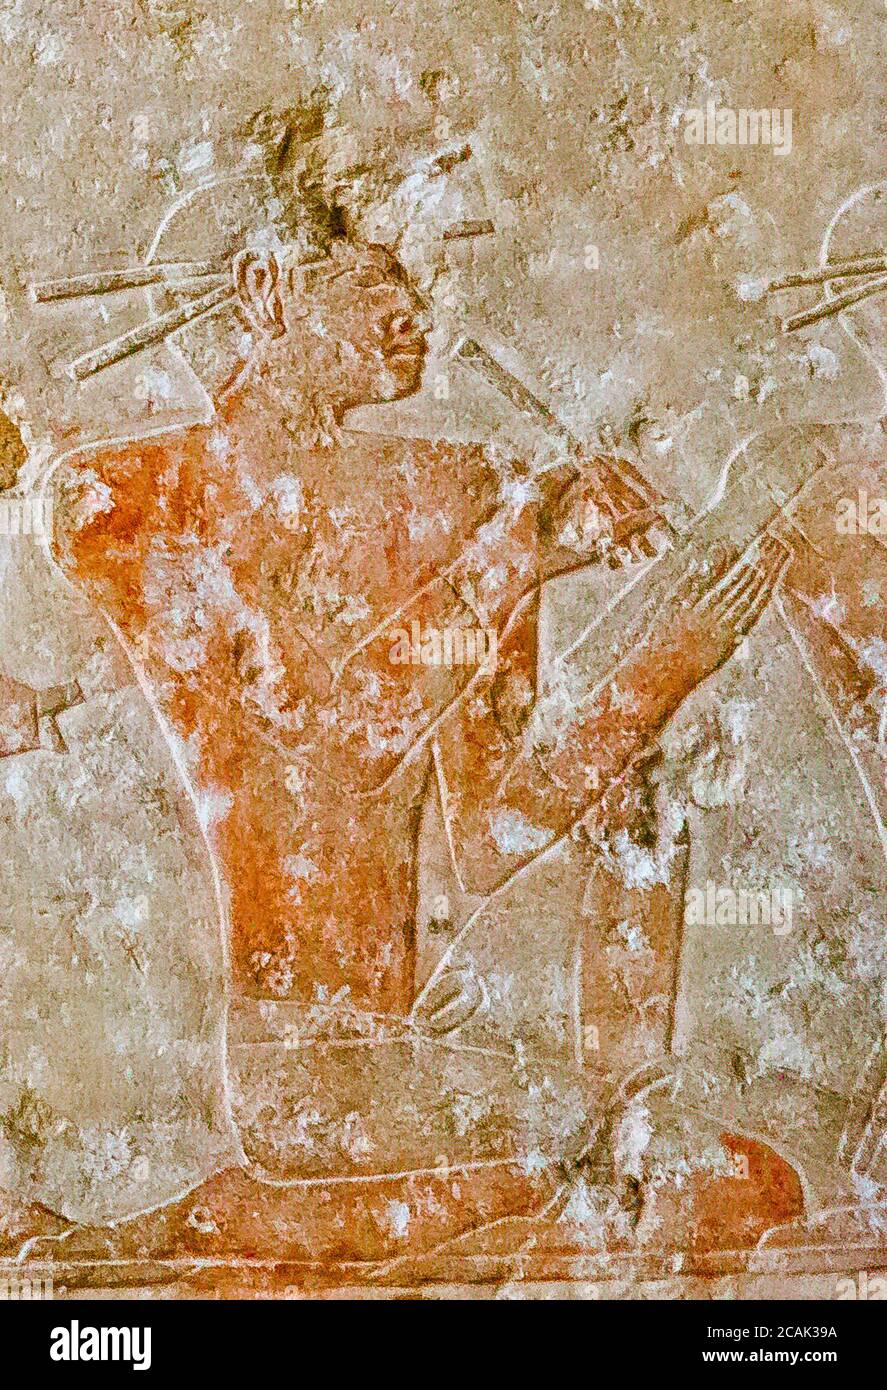 Égypte, le Caire, Musée égyptien, du tombeau de Kaemrehu, Saqqara, détail d'un grand relief représentant des scènes agricoles : UN scribe. Banque D'Images